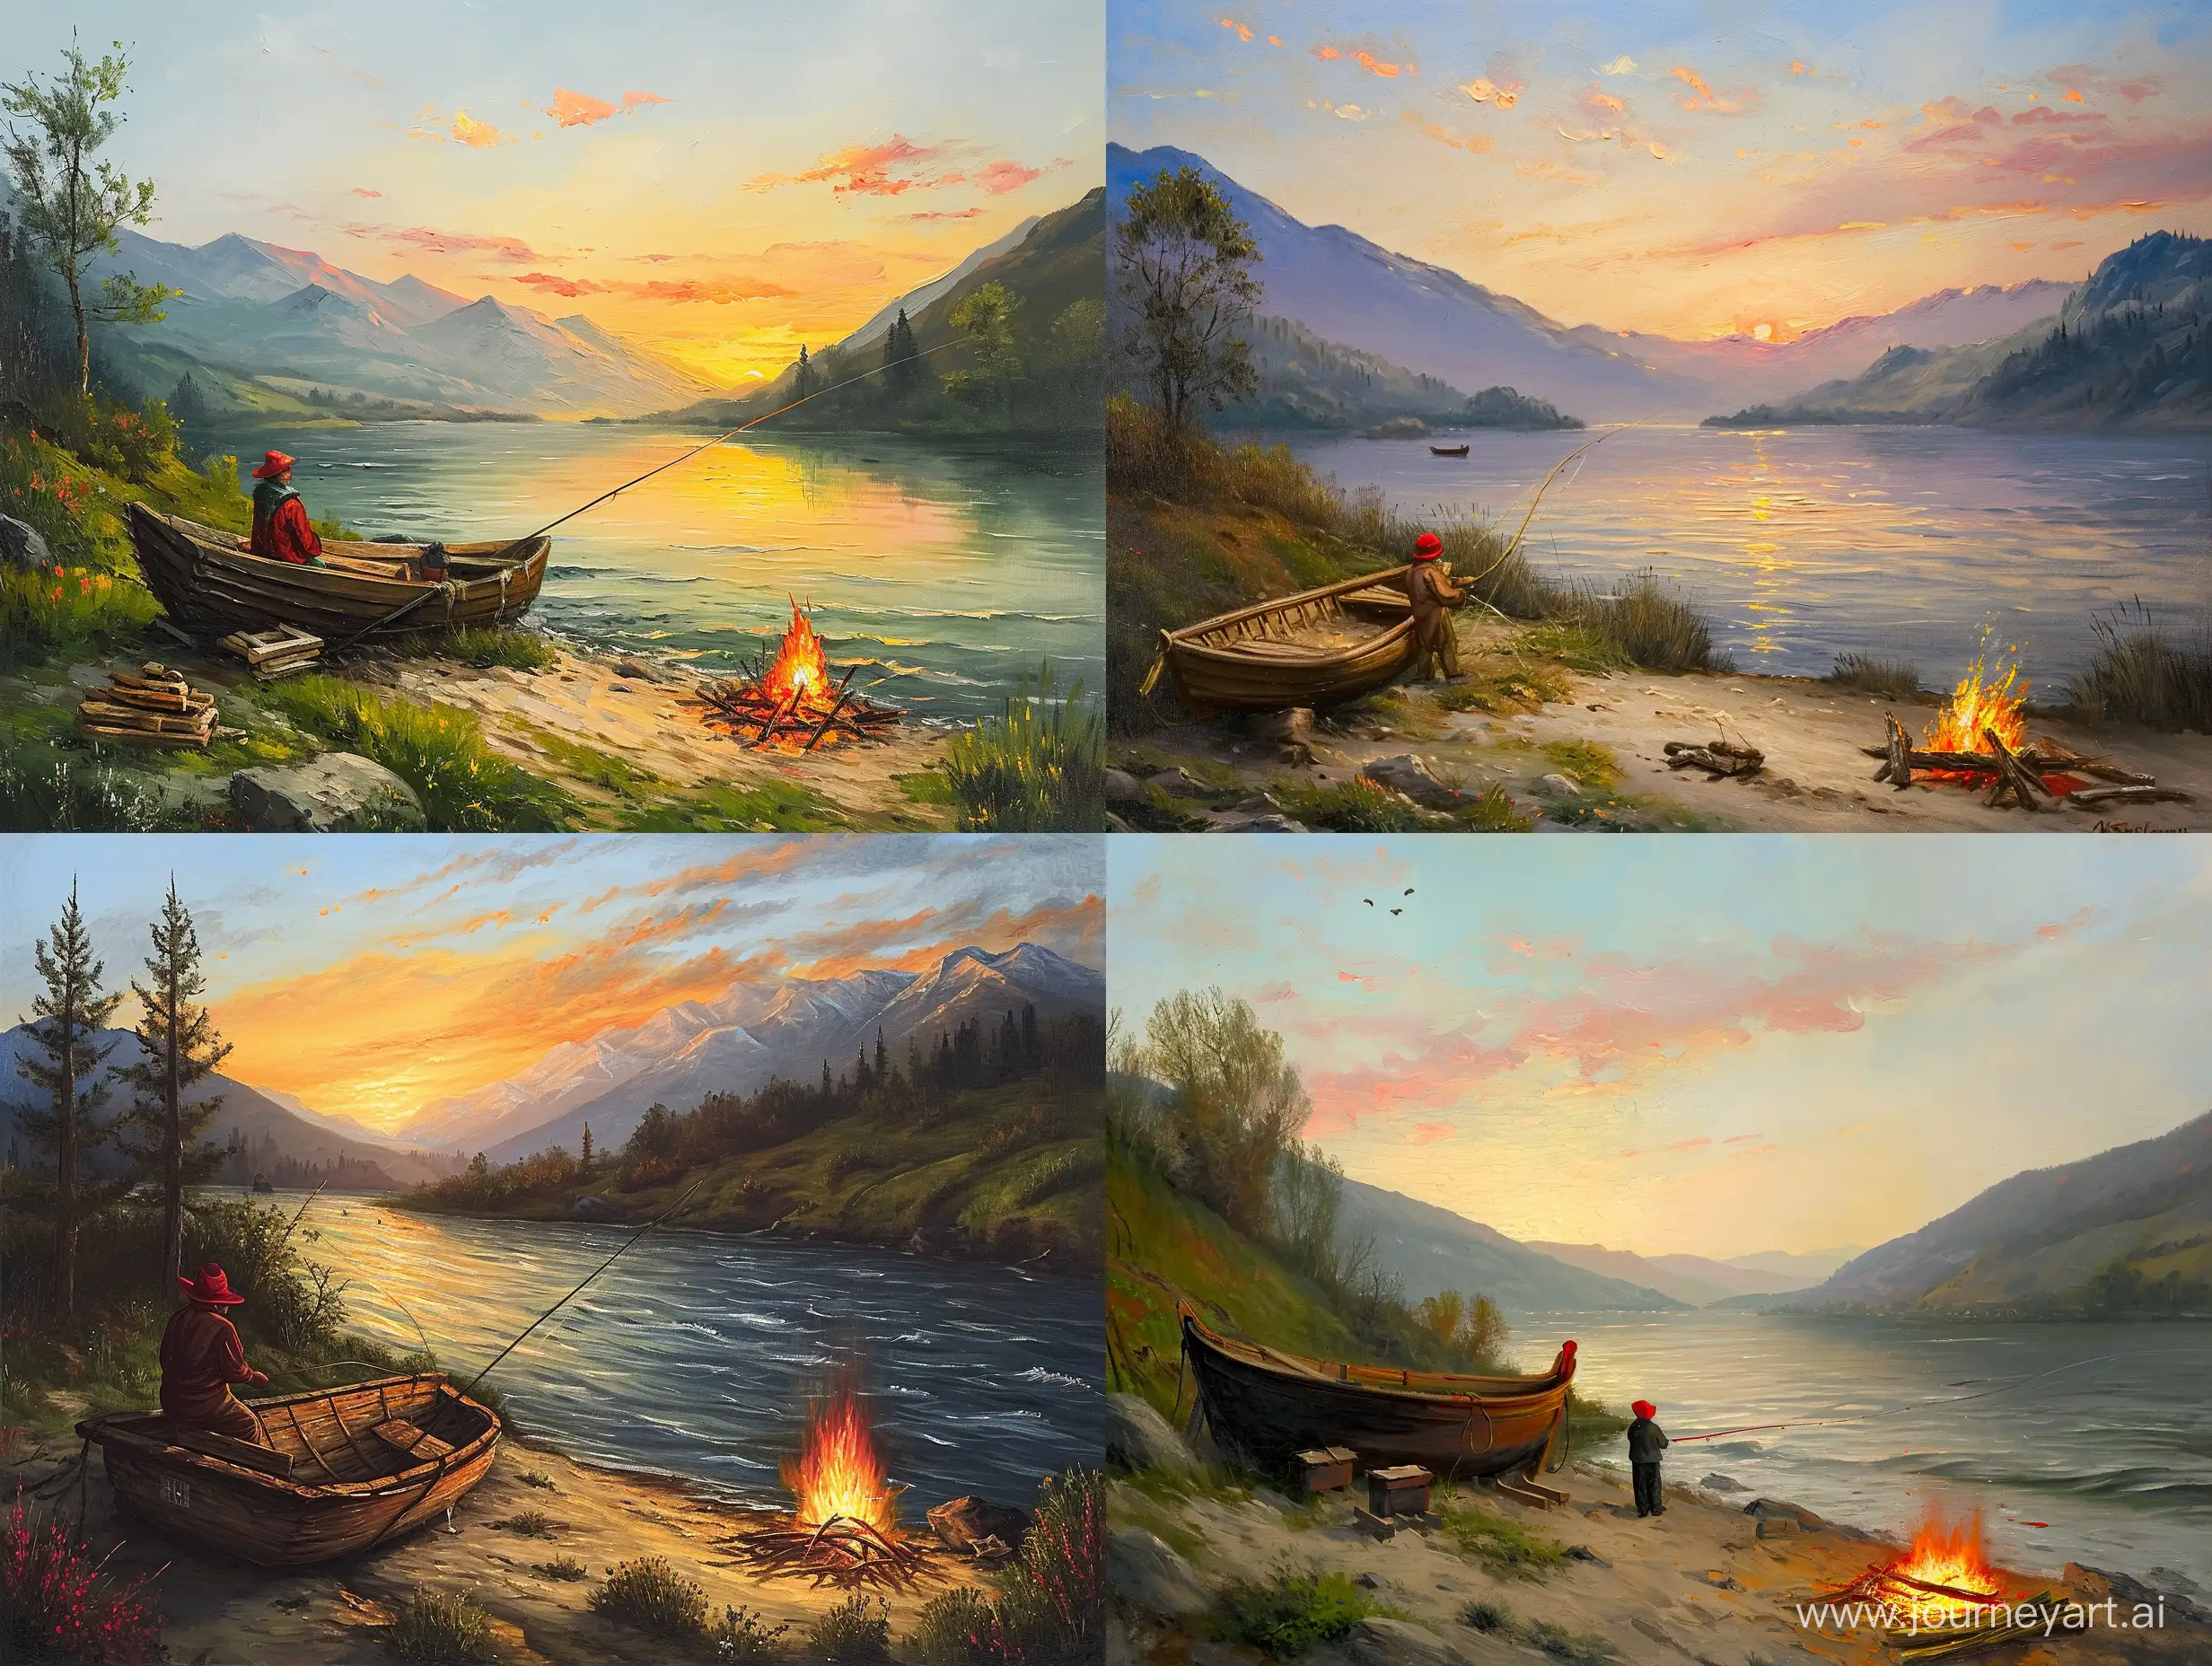 Картина Рыбак рыбачит у реки на фоне гор, вечерний закат, у рыбака красная шляпа, на берегу деревянная лодка, рядом горит костер